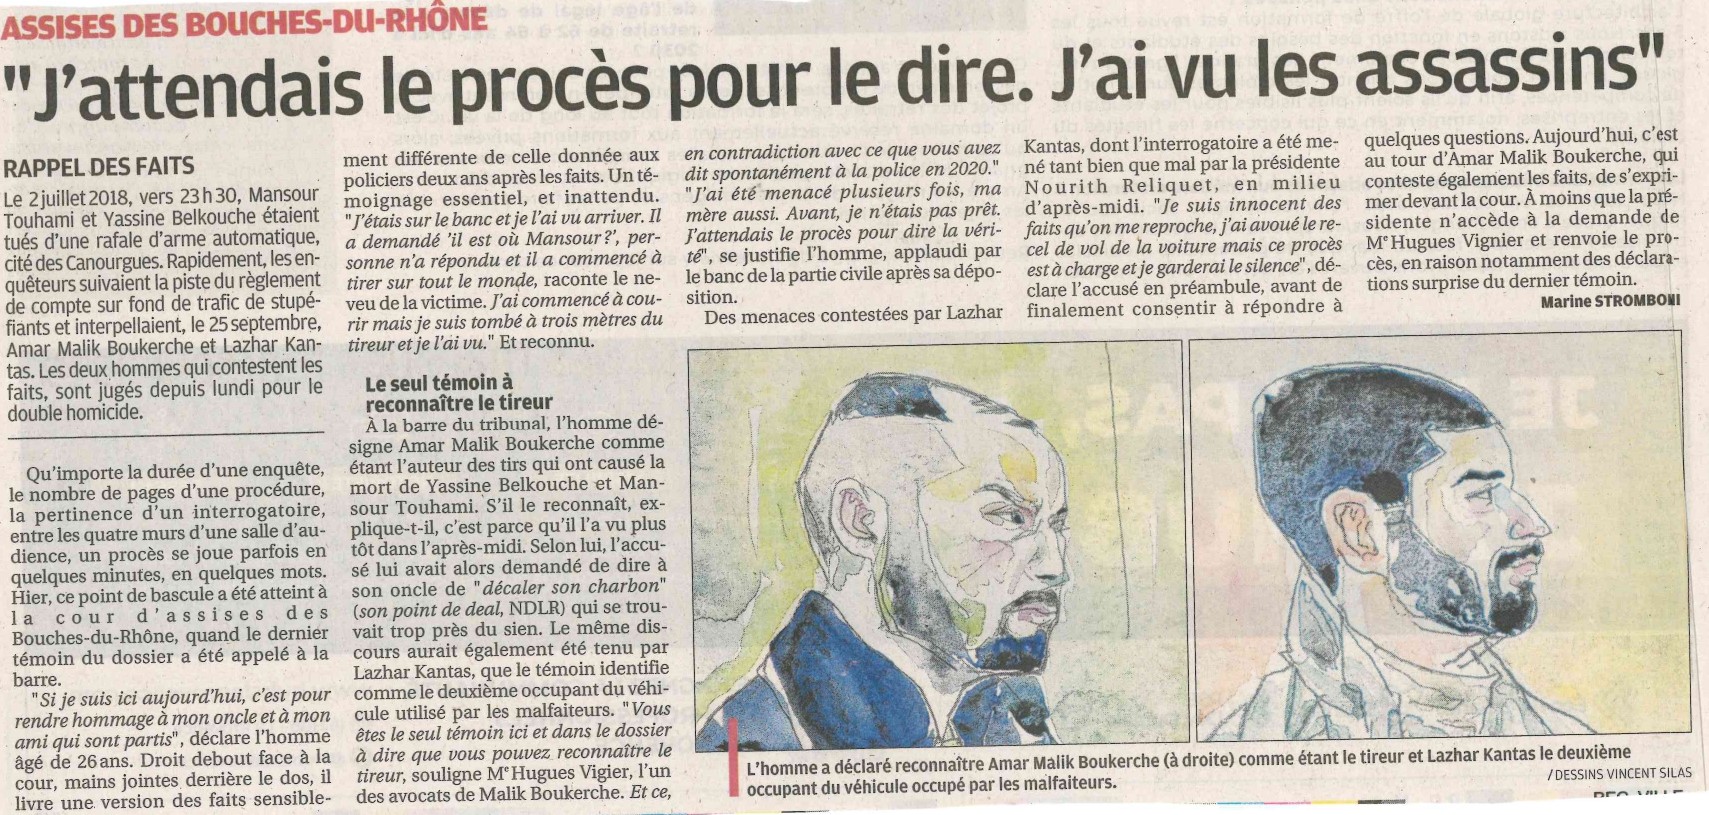 Double meurtre de Salon en Provence | La Provence - 02.03.23 - Cour d'Assises des Bouches du Rhône